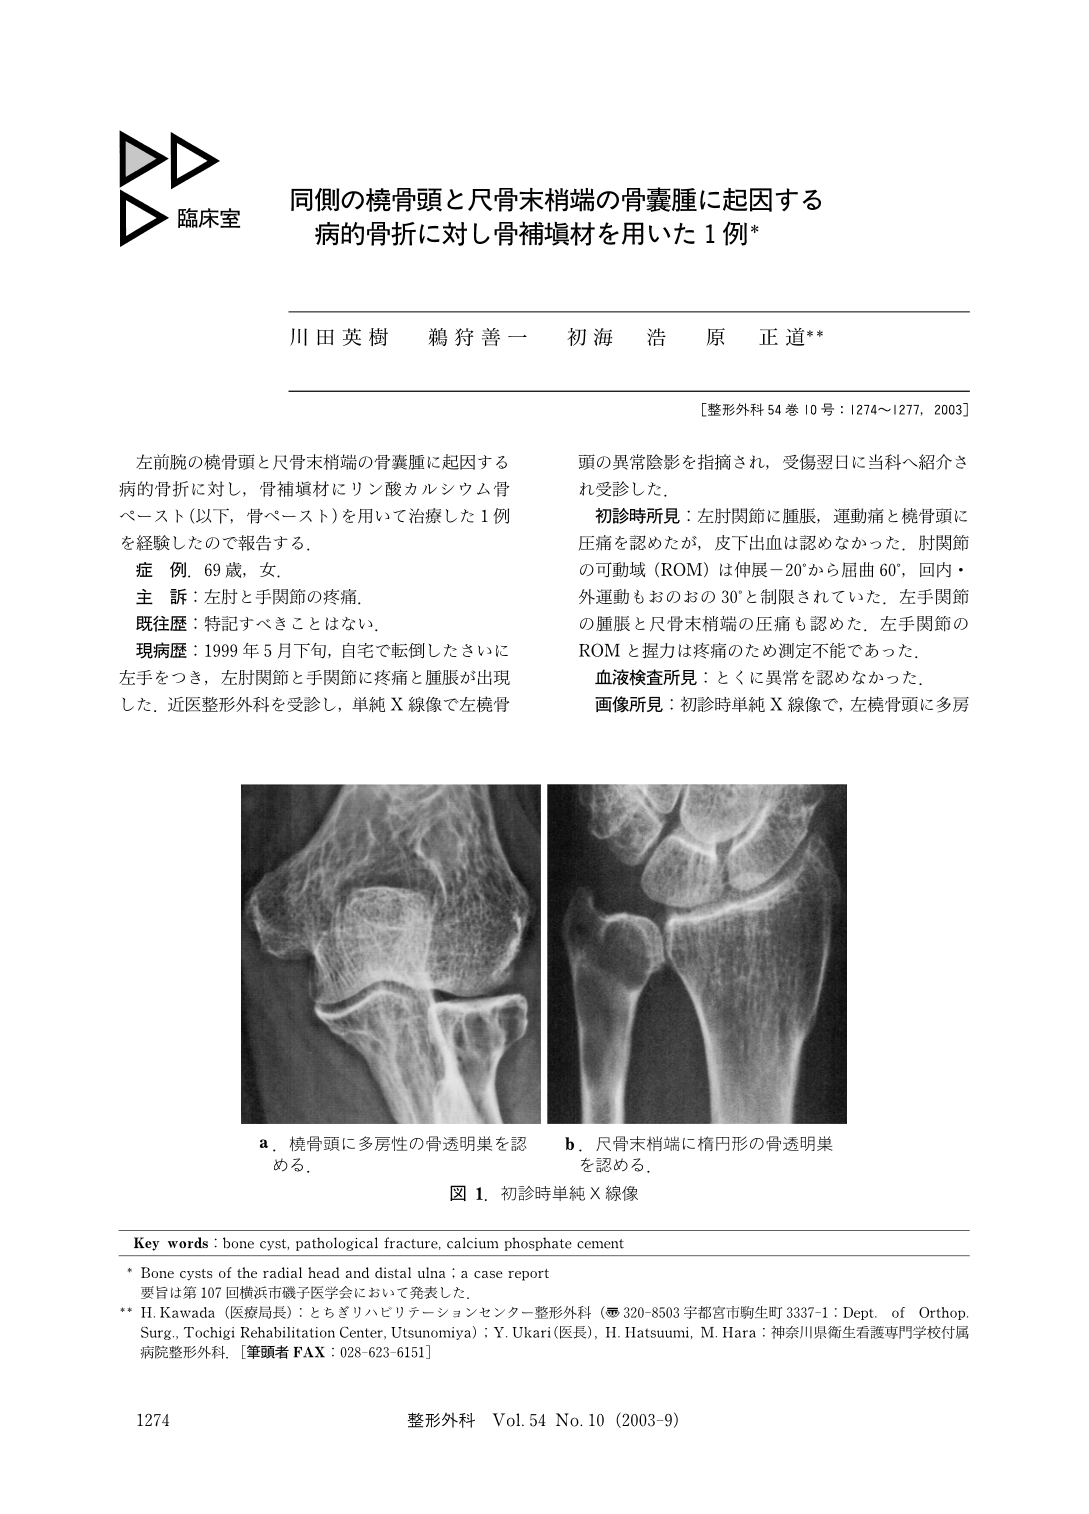 同側の橈骨頭と尺骨末梢端の骨嚢腫に起因する病的骨折に対し骨補填材を用いた1例 臨床雑誌整形外科 54巻10号 医書 Jp